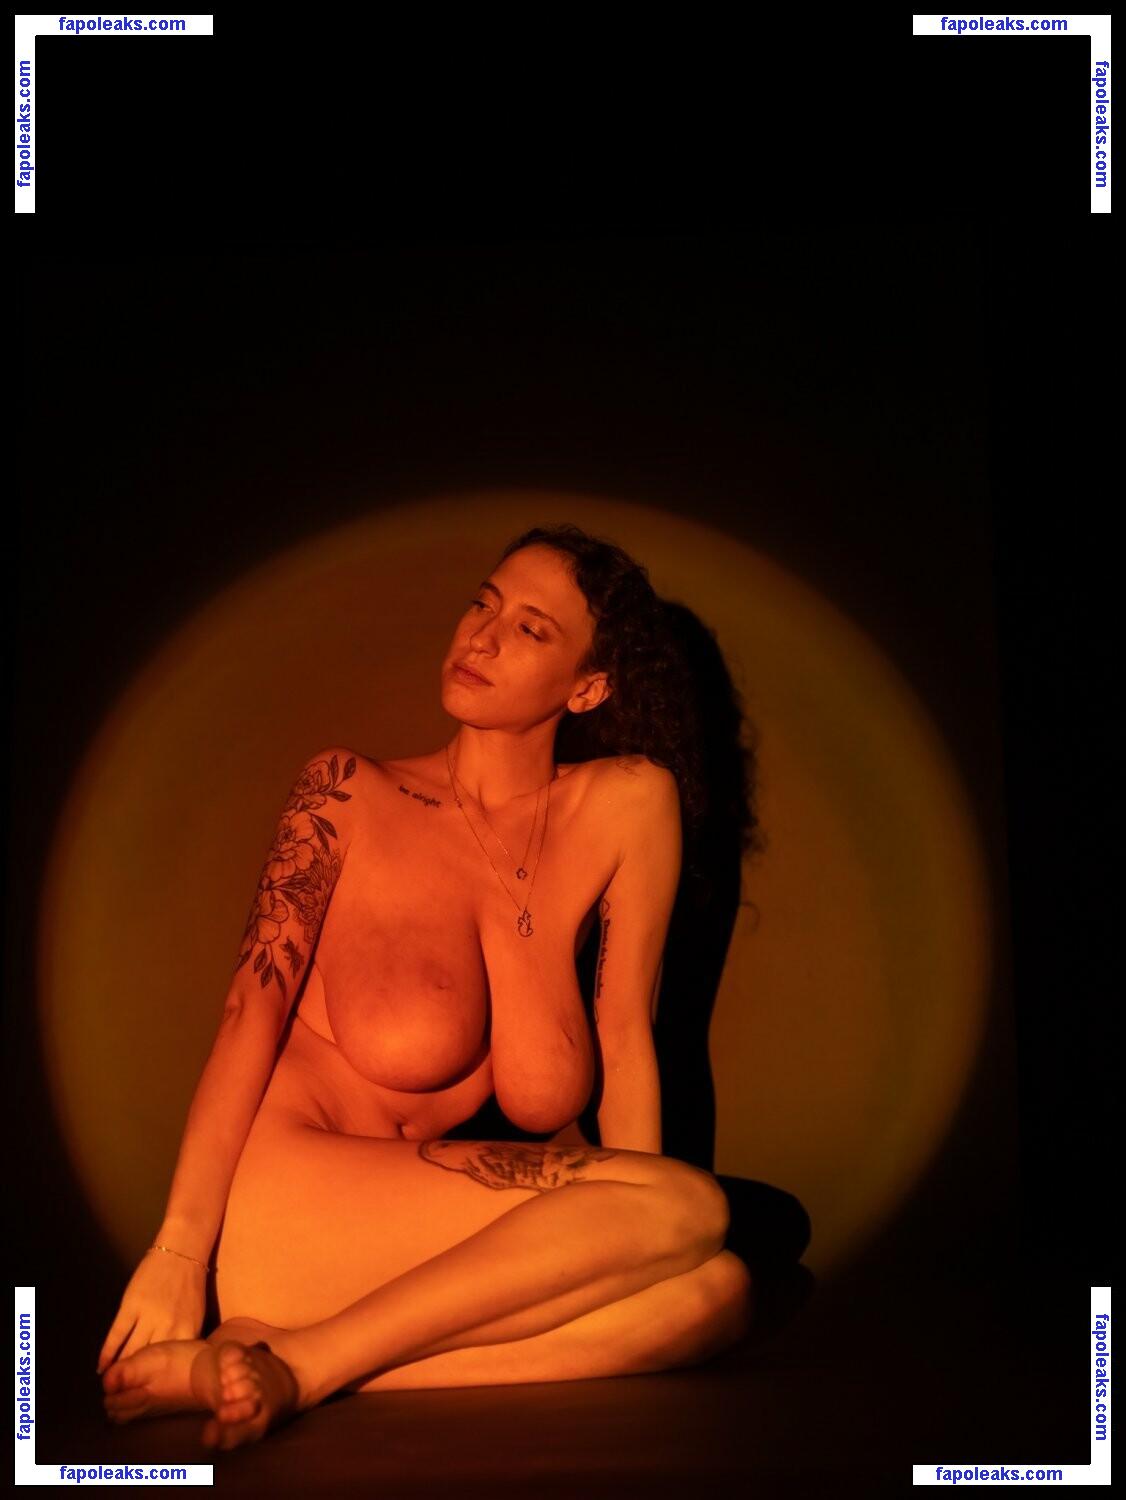 Yasmin Avrahami / aliceeee_watson / jasmins3 nude photo #0158 from OnlyFans